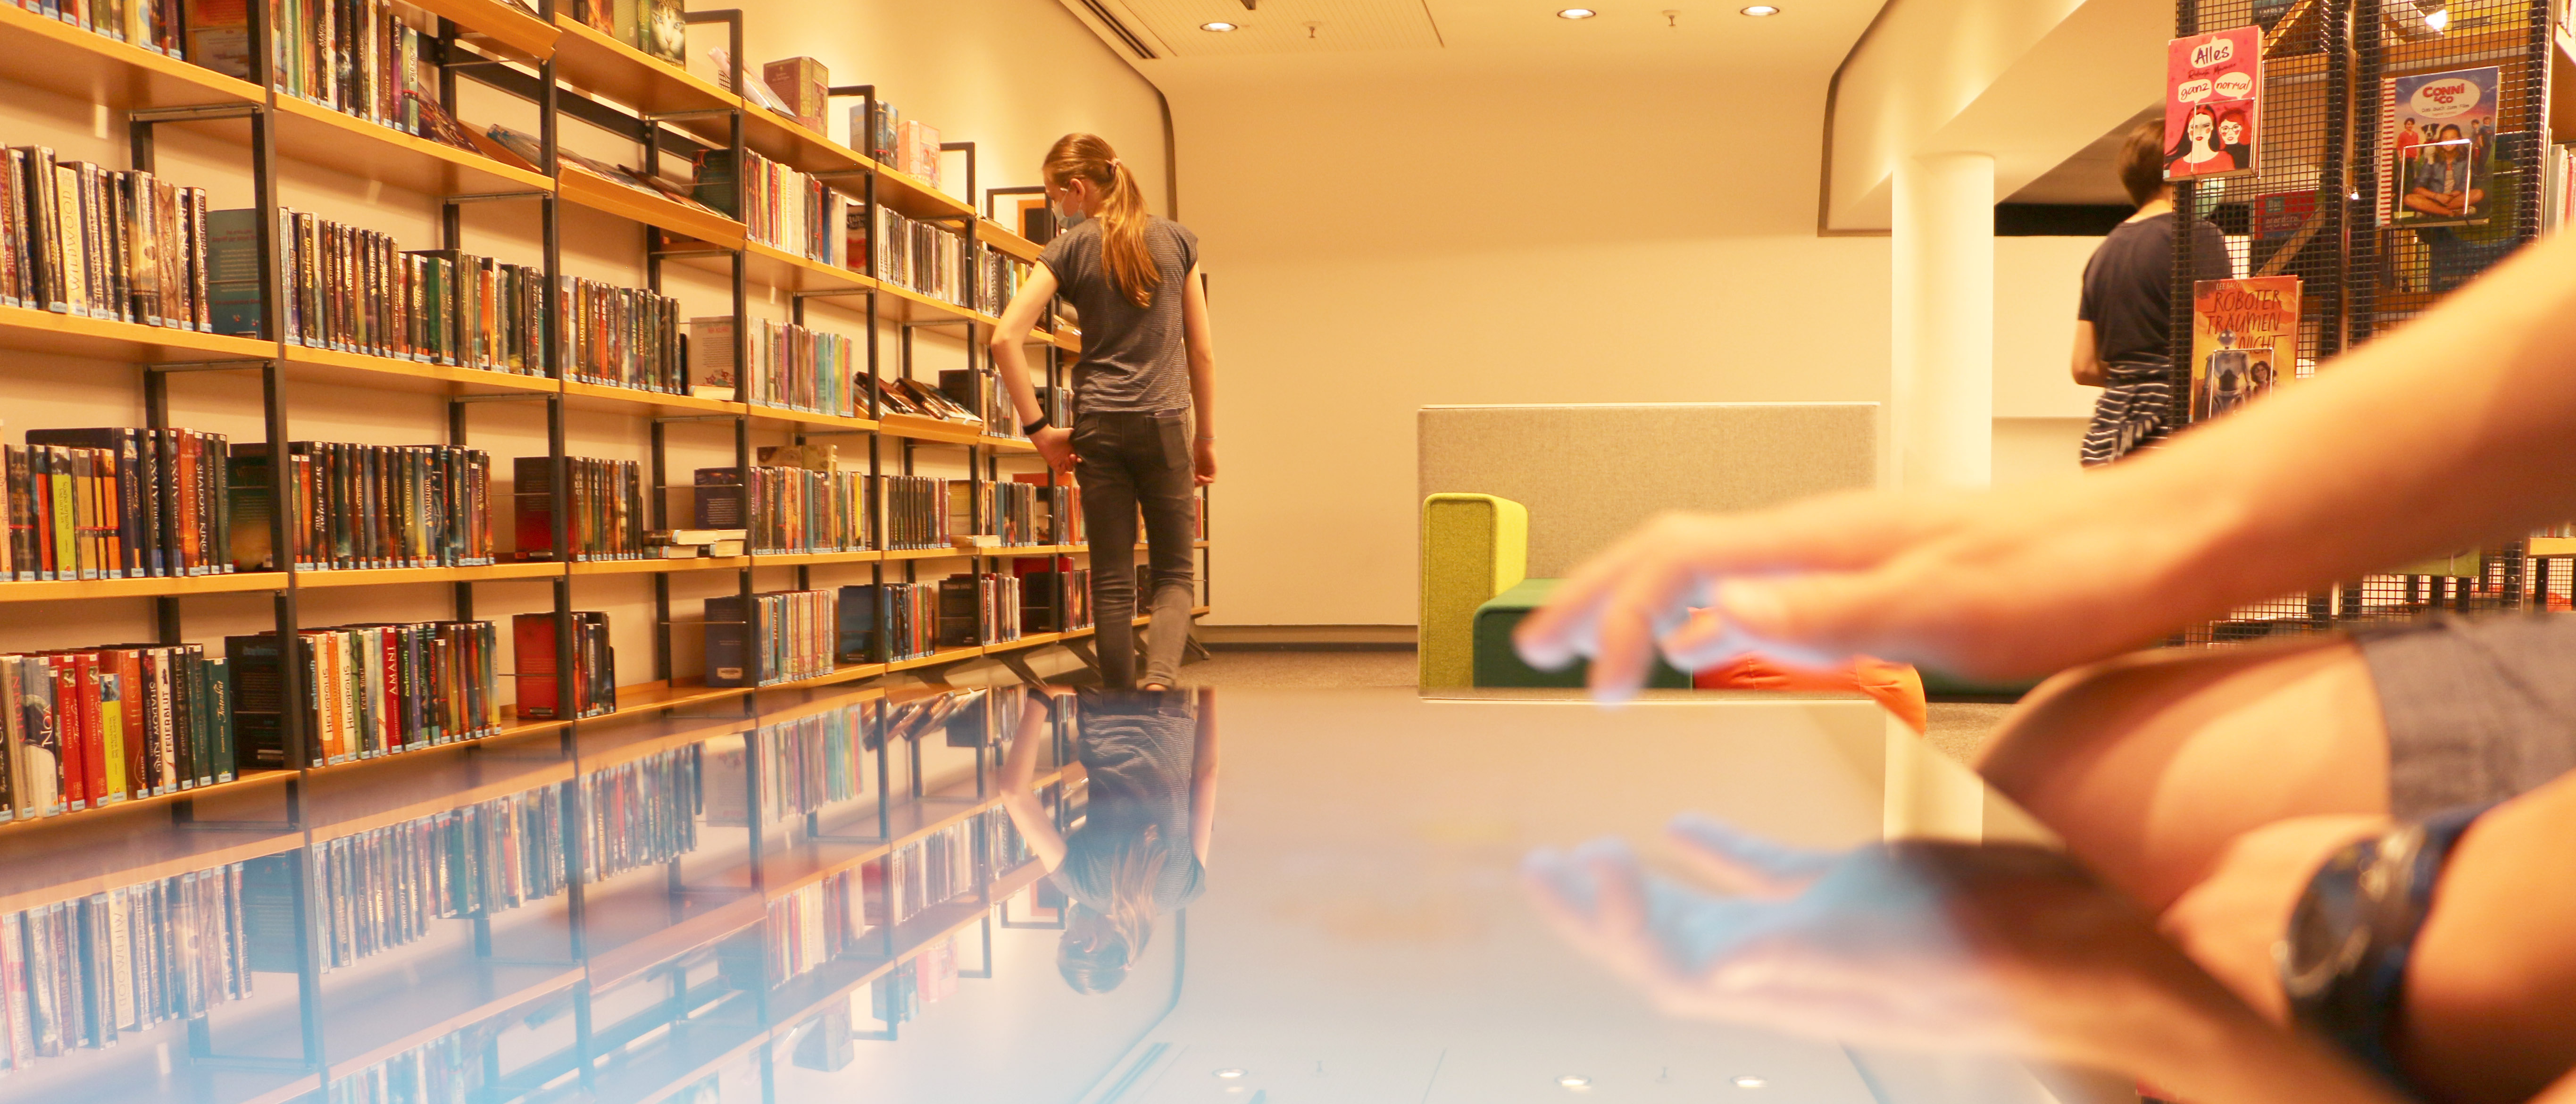 Im Vordergrund eine Hand an einem Touch-Screen; Im Hintergrund sucht ein Mädchen etwas in einem Bücherregal